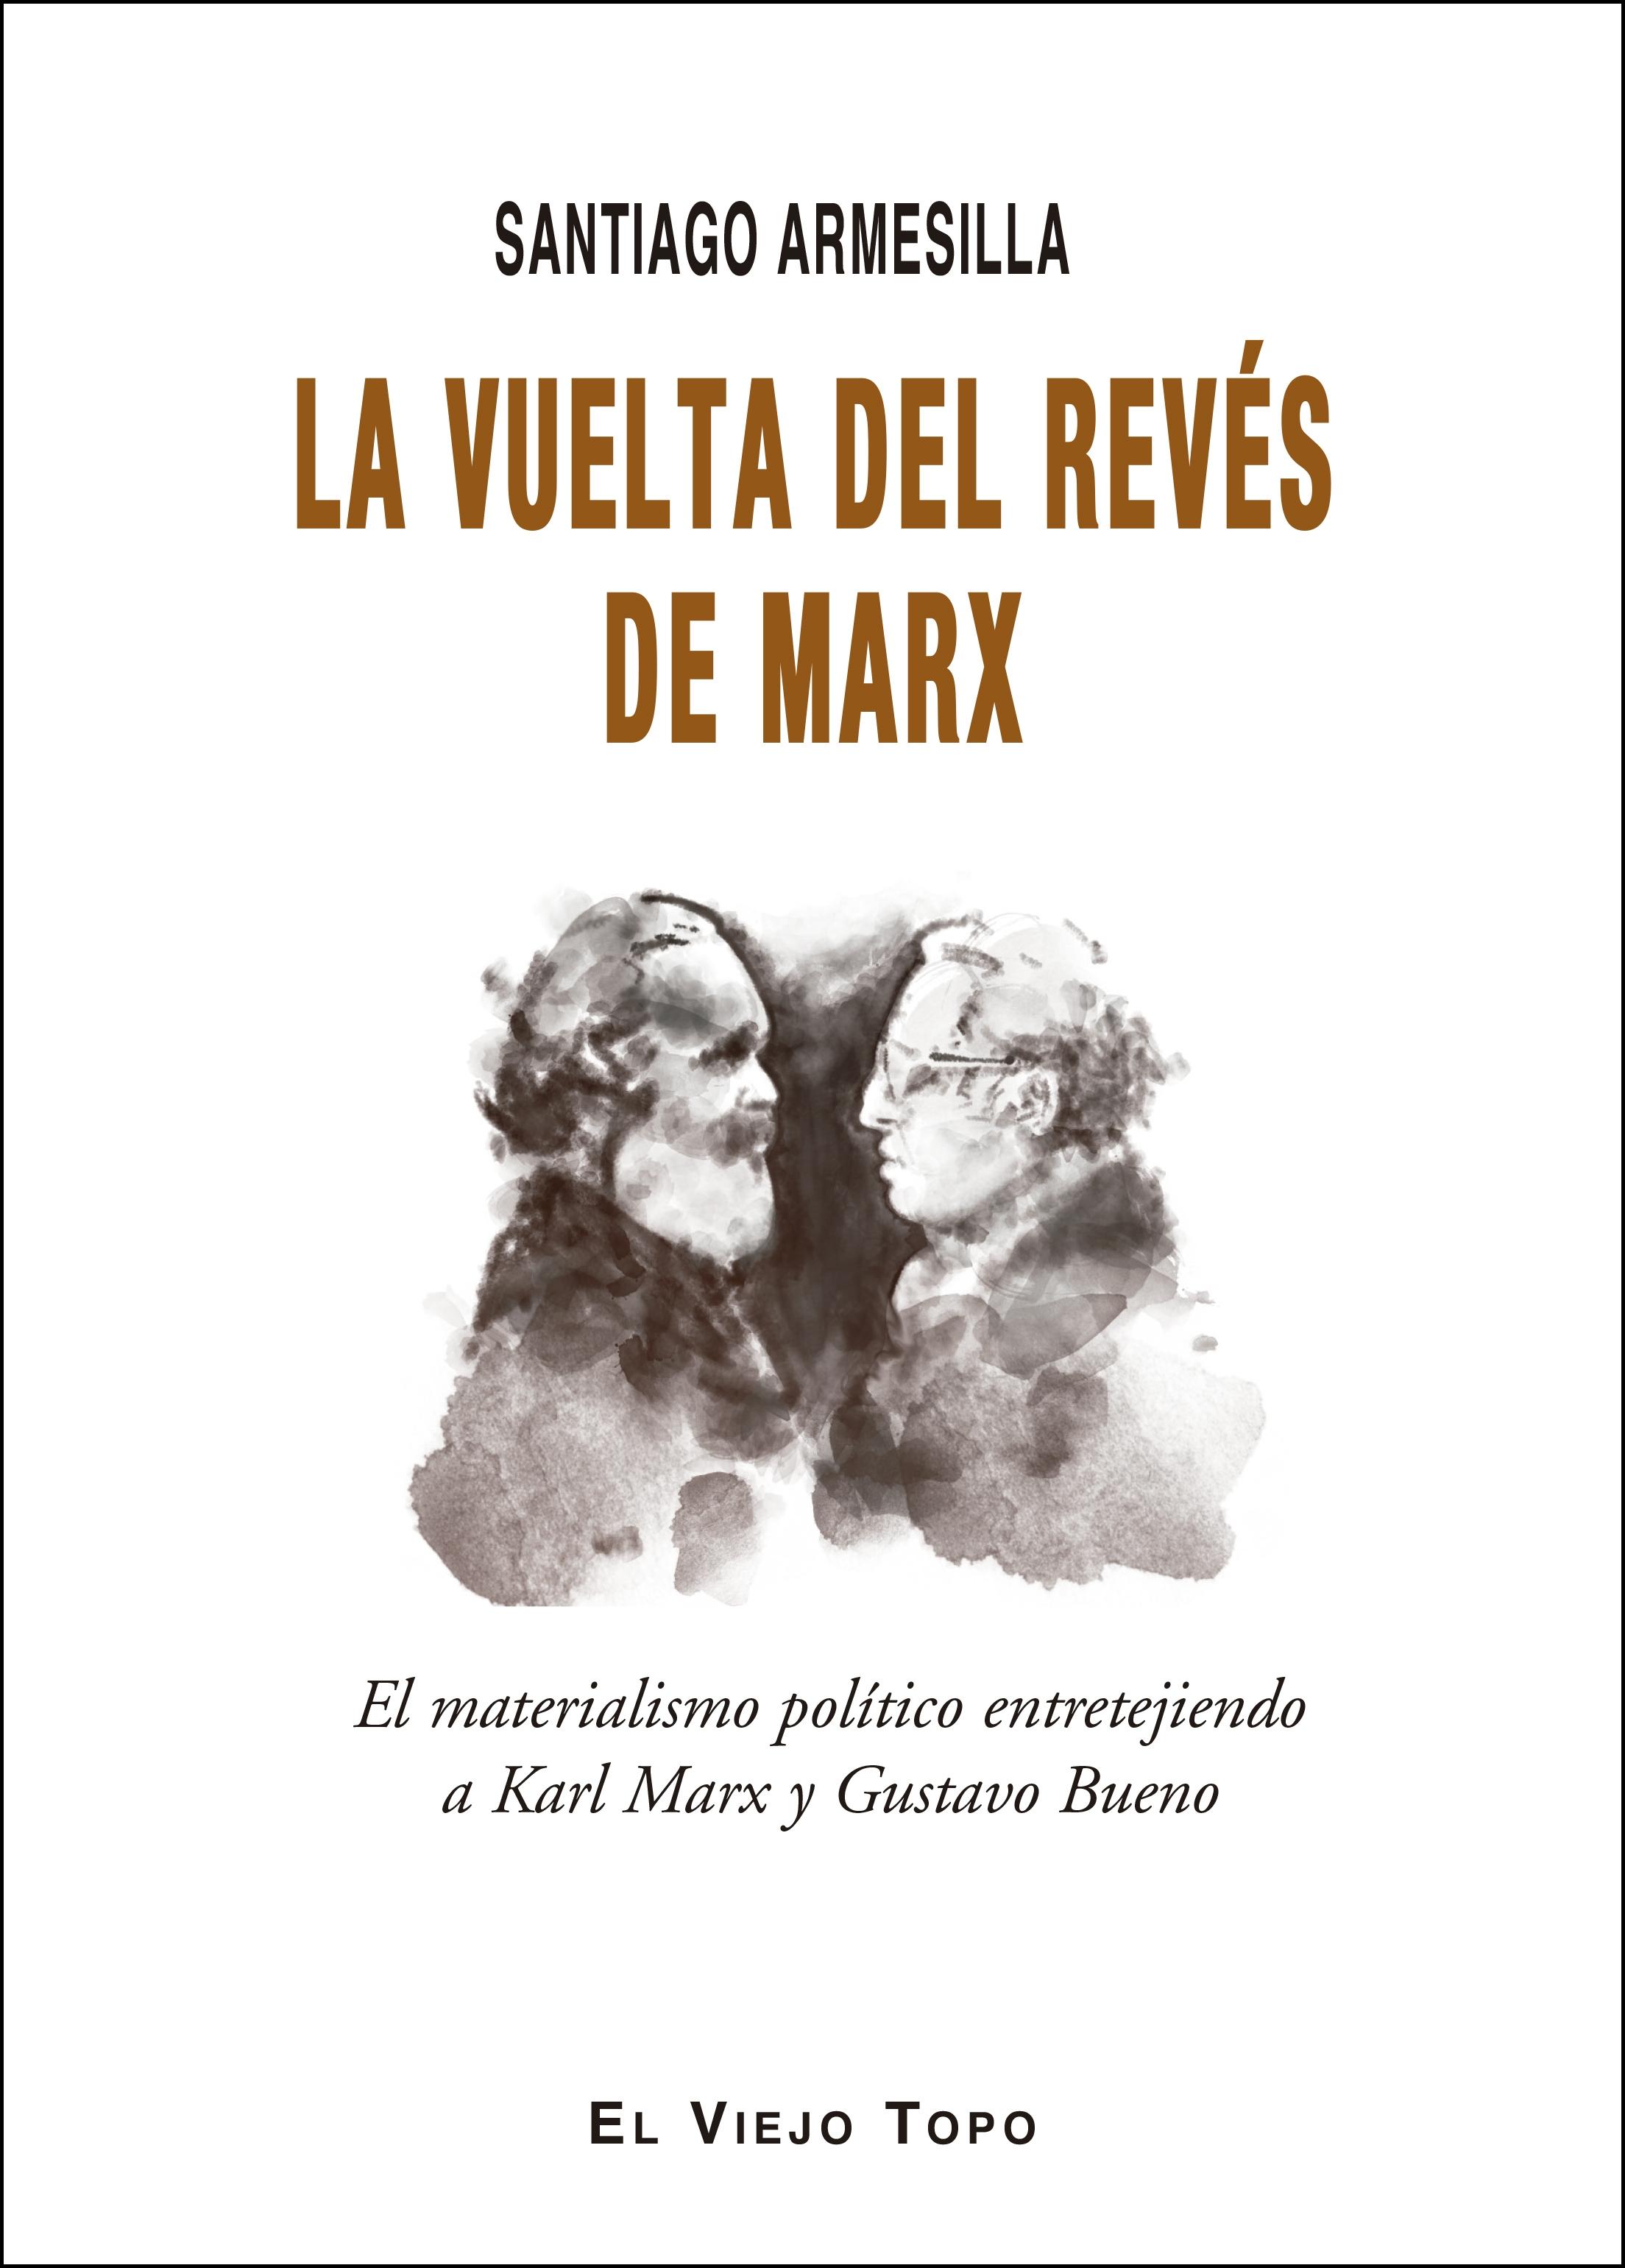 La Vuelta del Revés de Marx "El Materialismo Politico Entretejiendo a Karl Marx y Gustavo Bueno". 